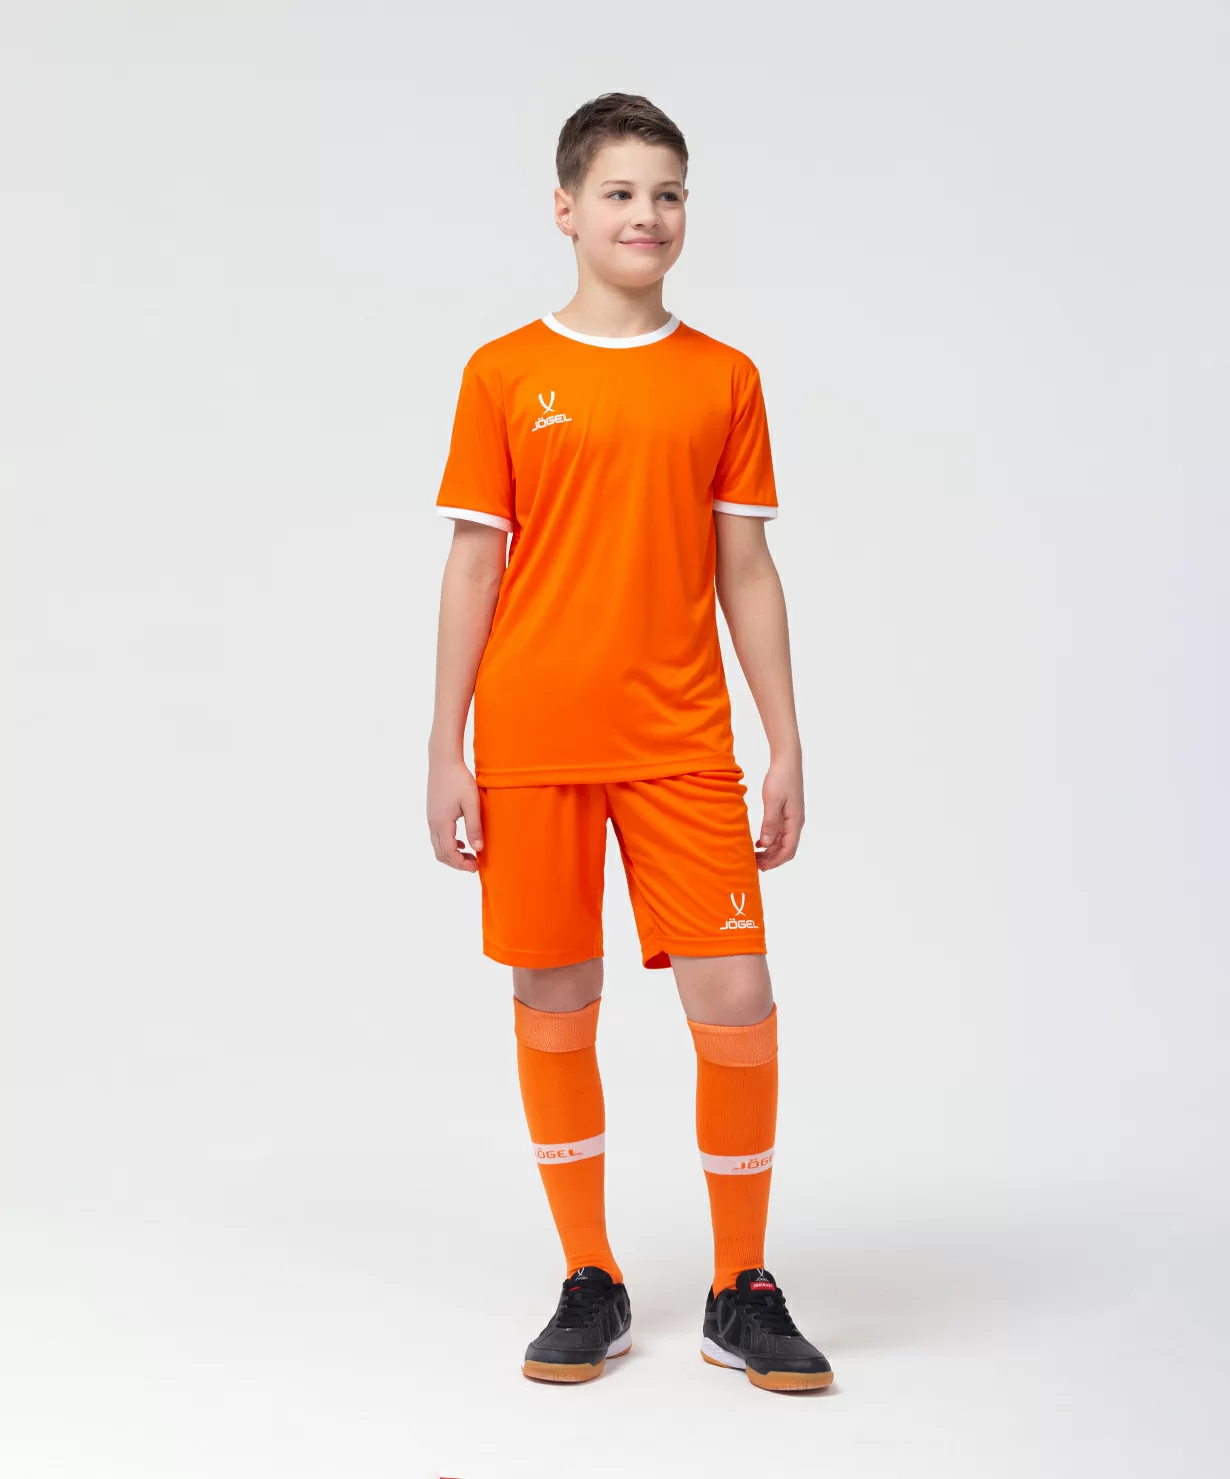 Фото Футболка футбольная CAMP Origin, оранжевый/белый, детский Jögel со склада магазина Спортев